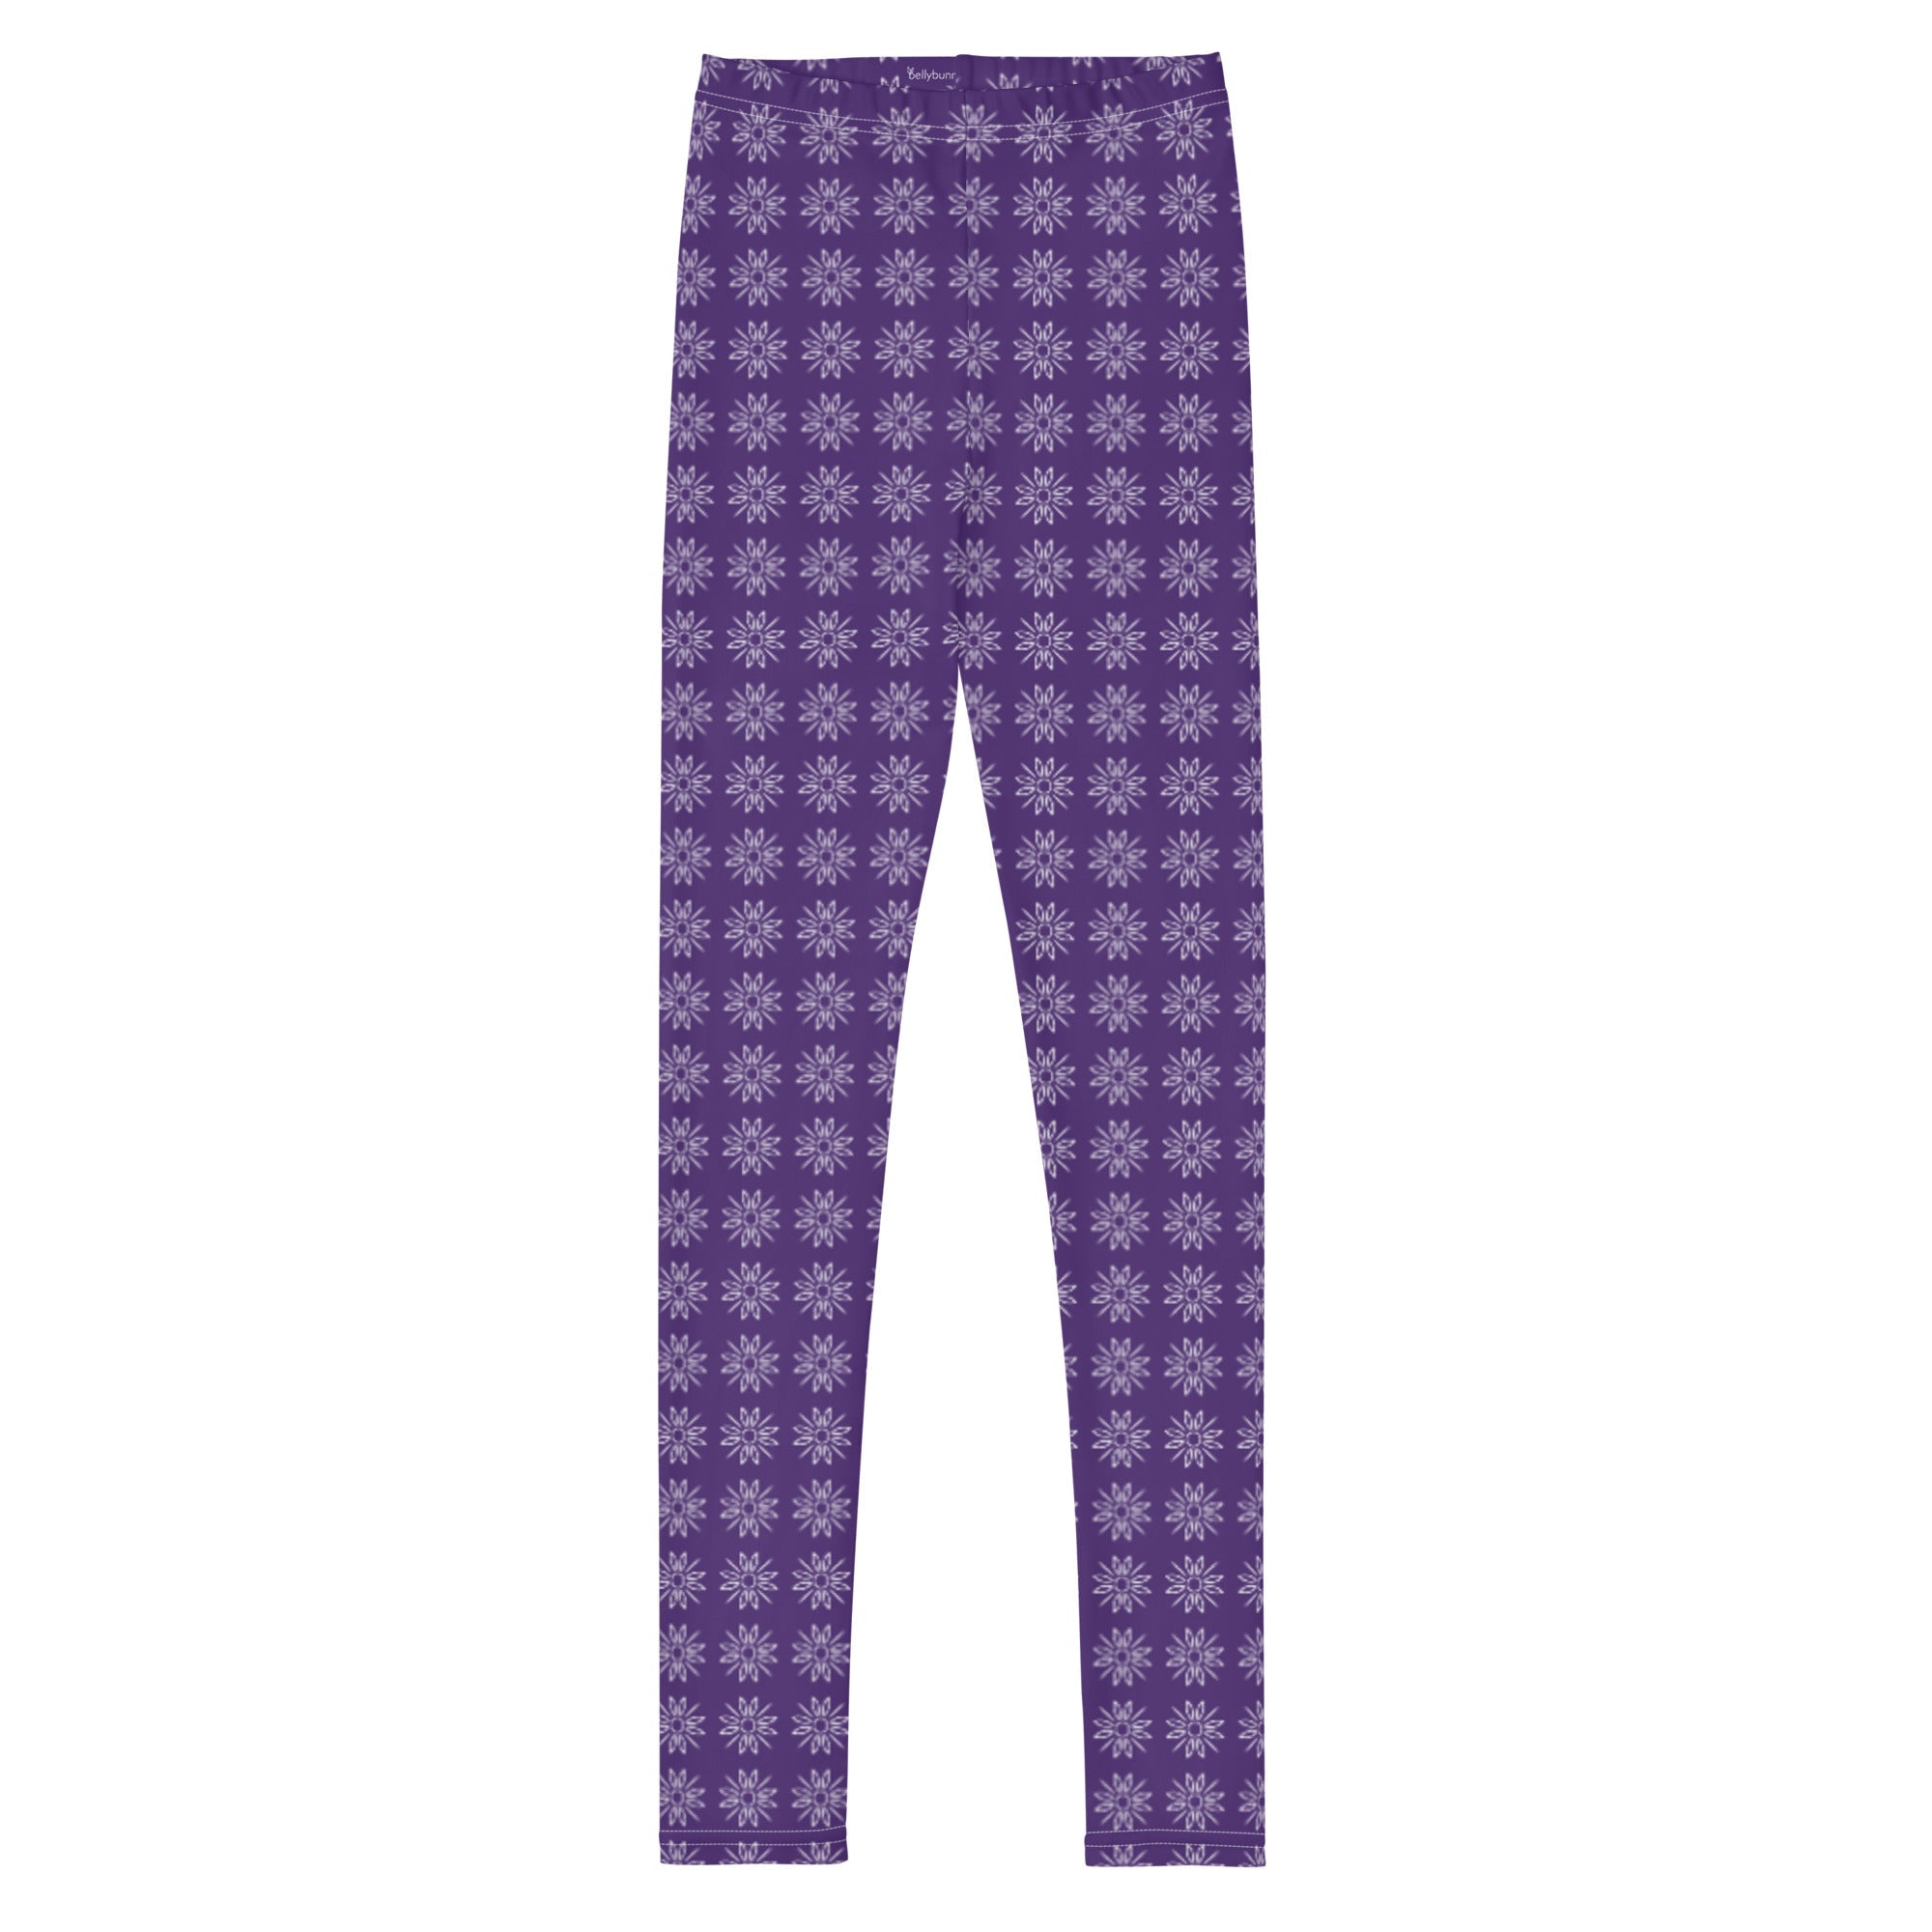 Slim frill leggings pattern | LittlePeople